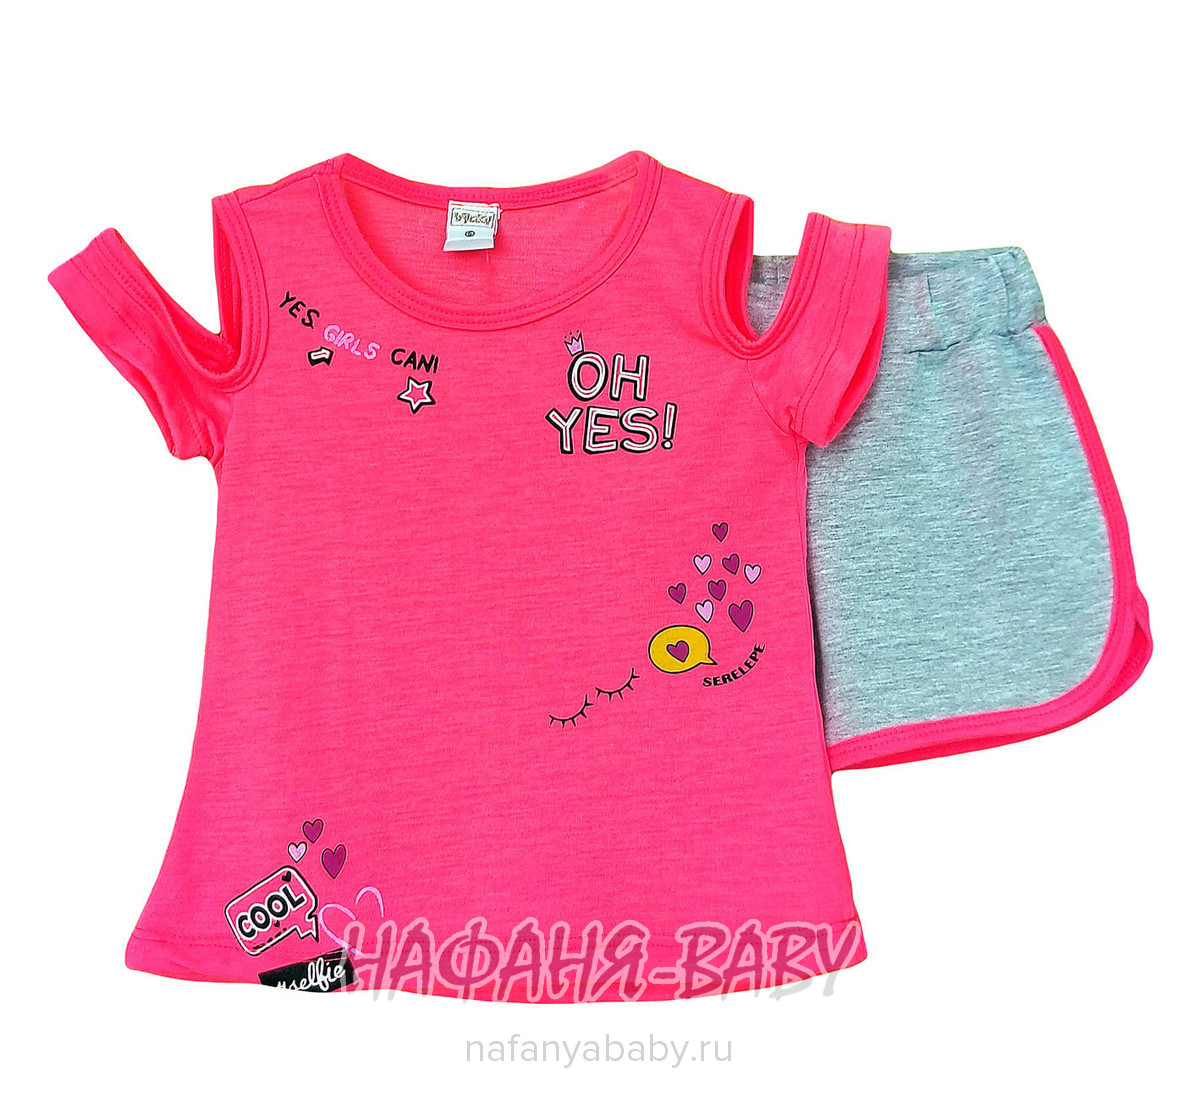 Детский костюм (футболка + шорты) AYCITY, купить в интернет магазине Нафаня. арт: 2908.